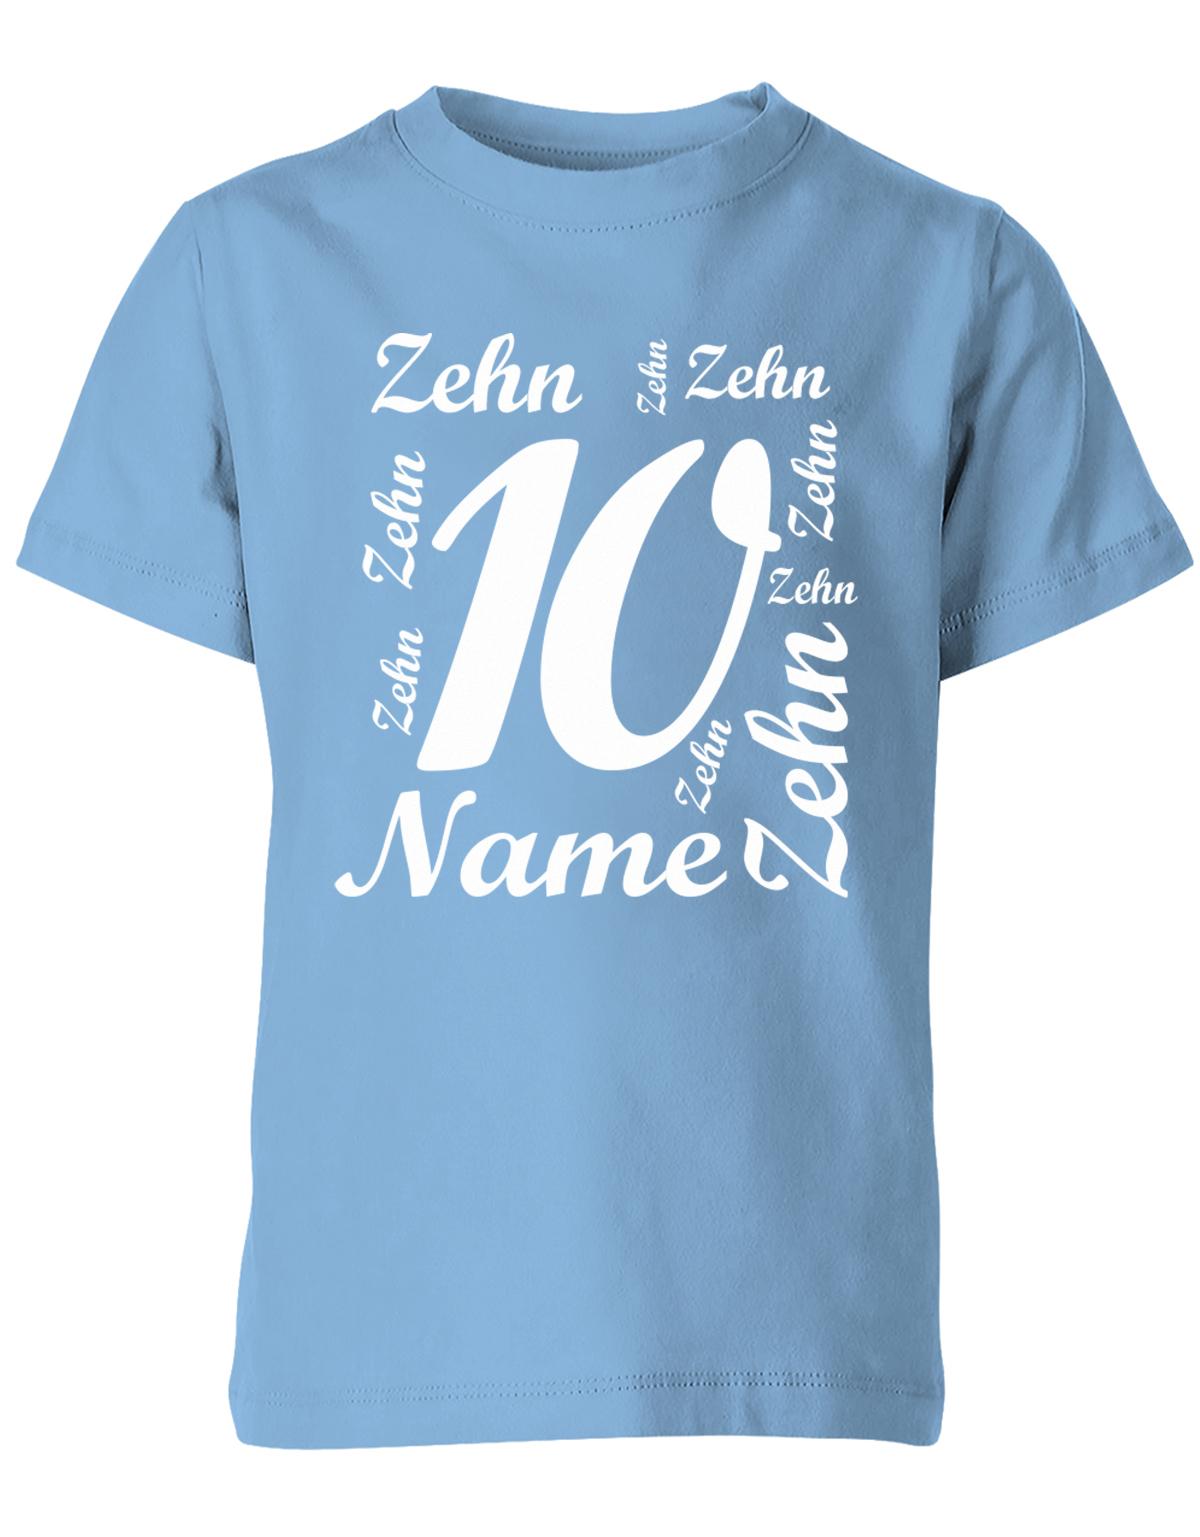 ich-bin-10-viele-zehnen-mit-name-geburtstag-kinder-shirt-hellblau